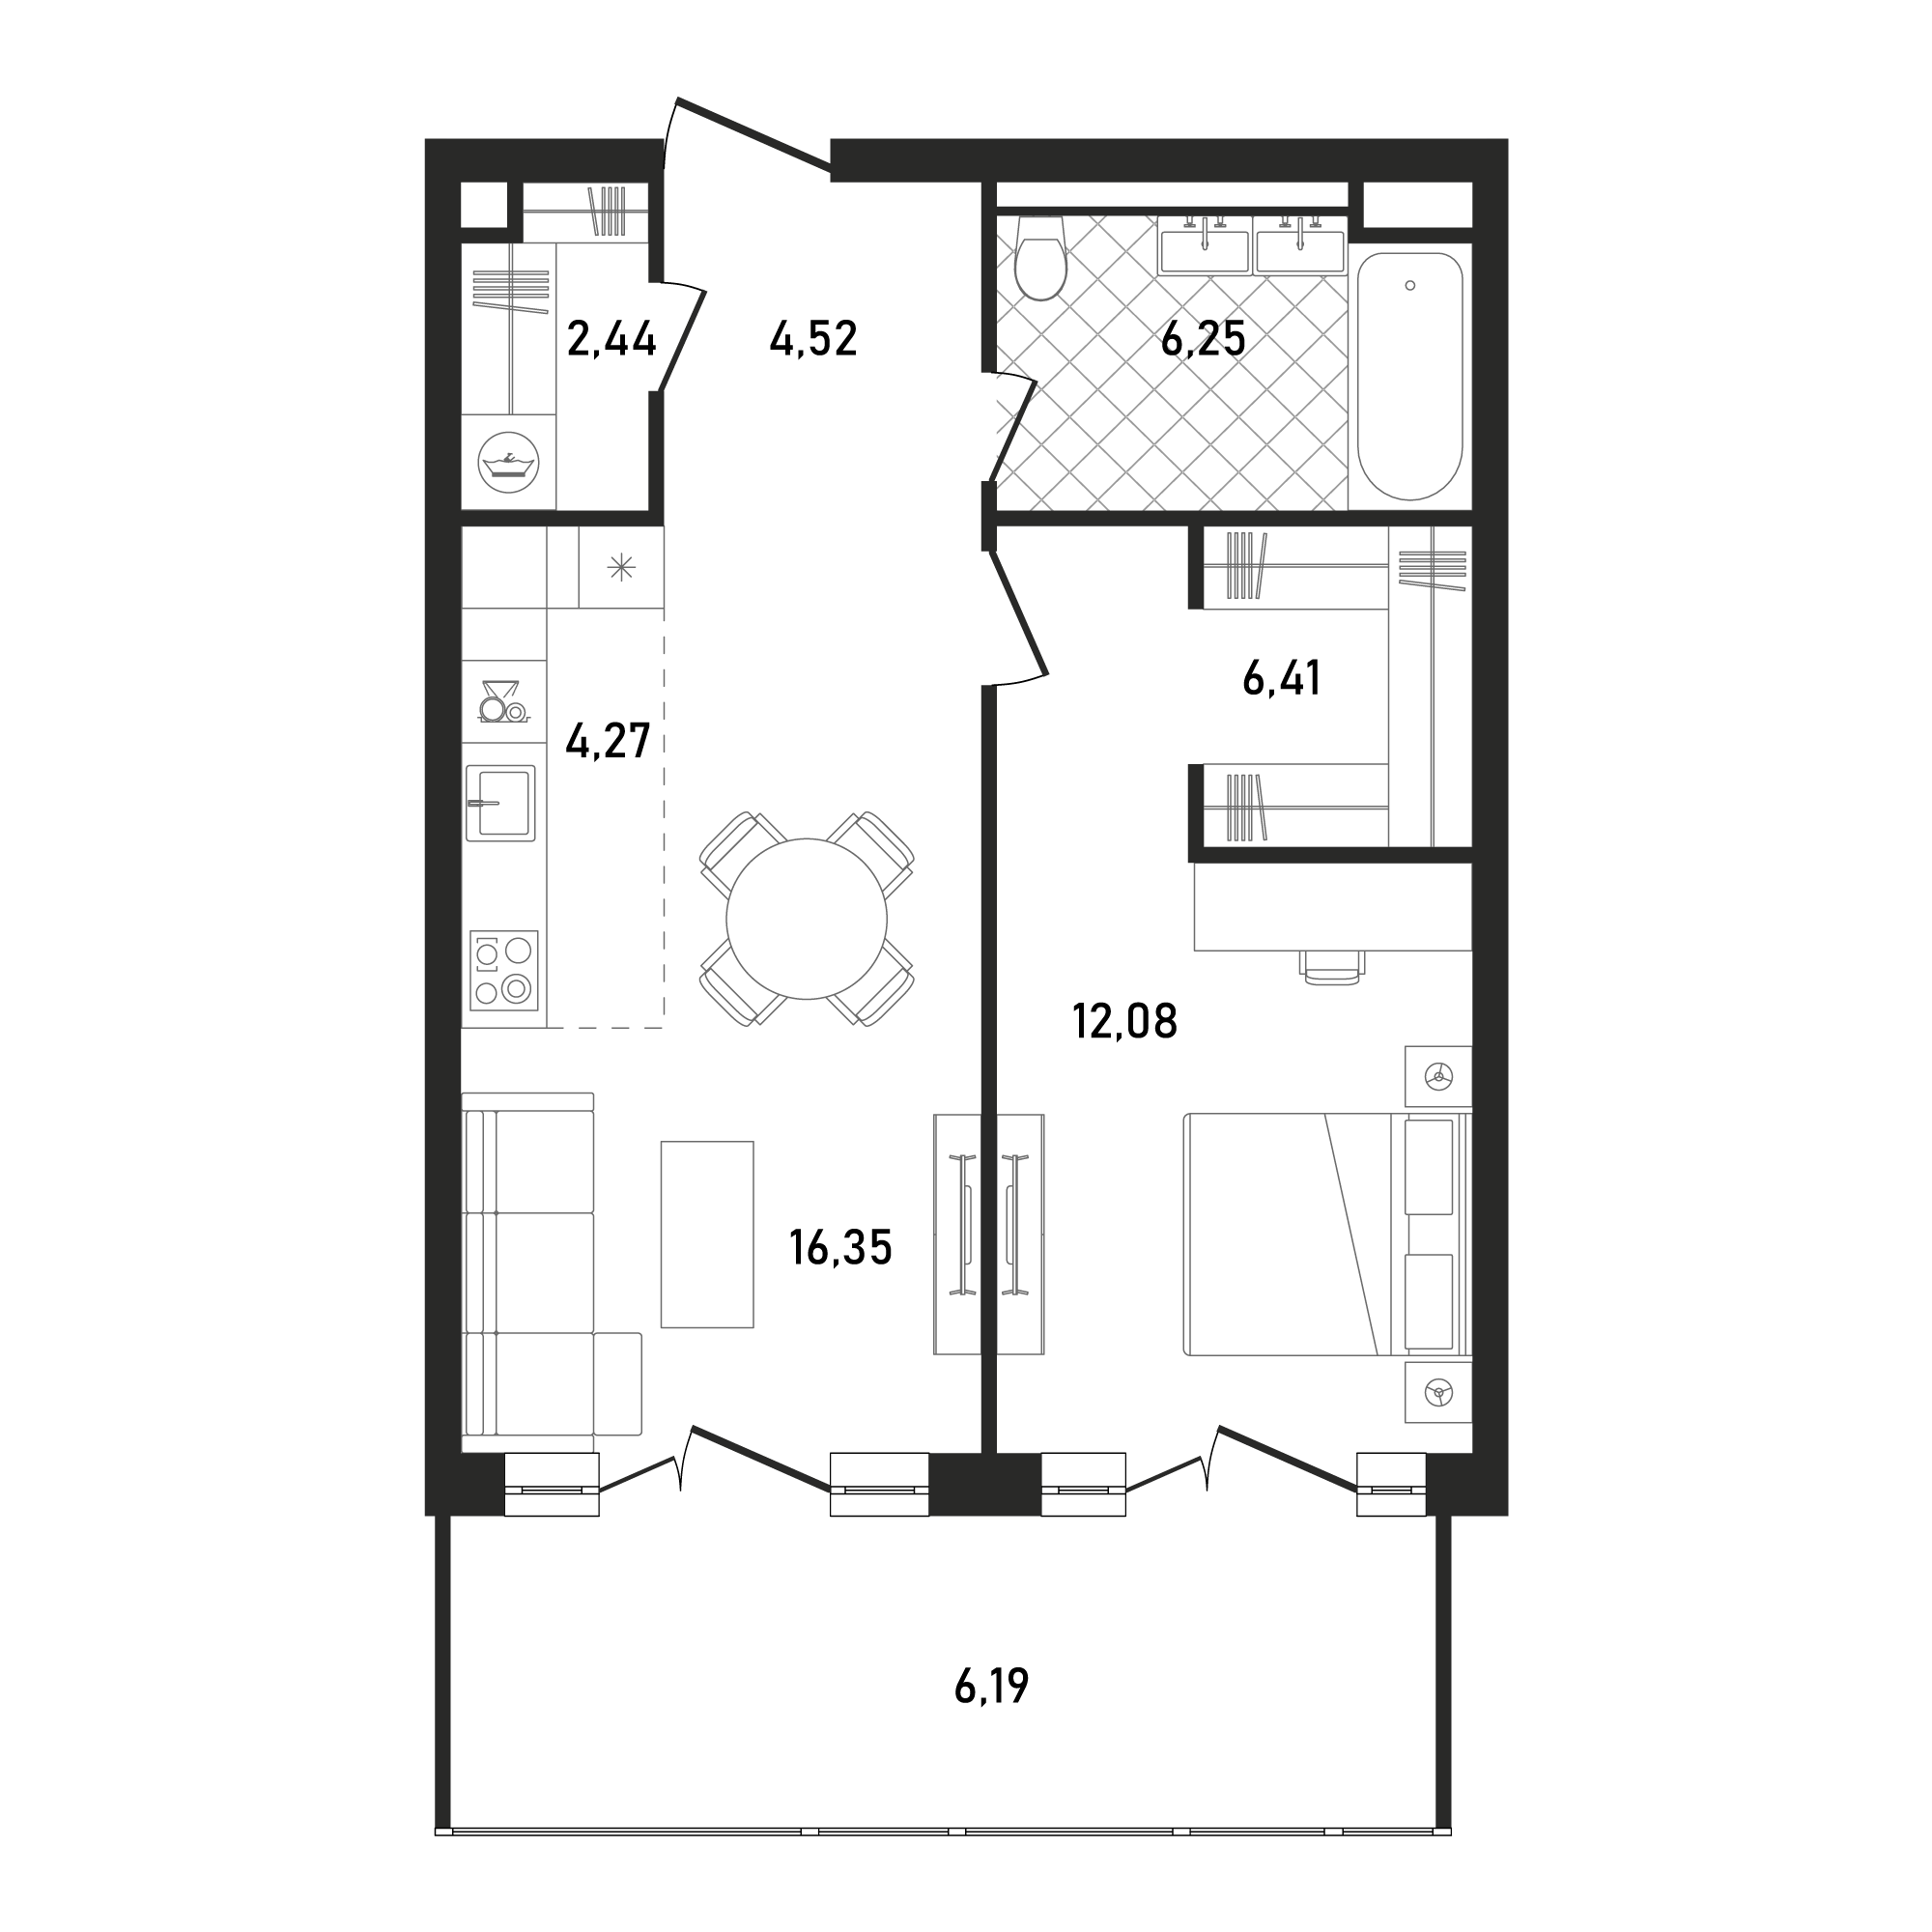 Планировка Квартира с 2 спальнями 58.69 м2 в ЖК Republic